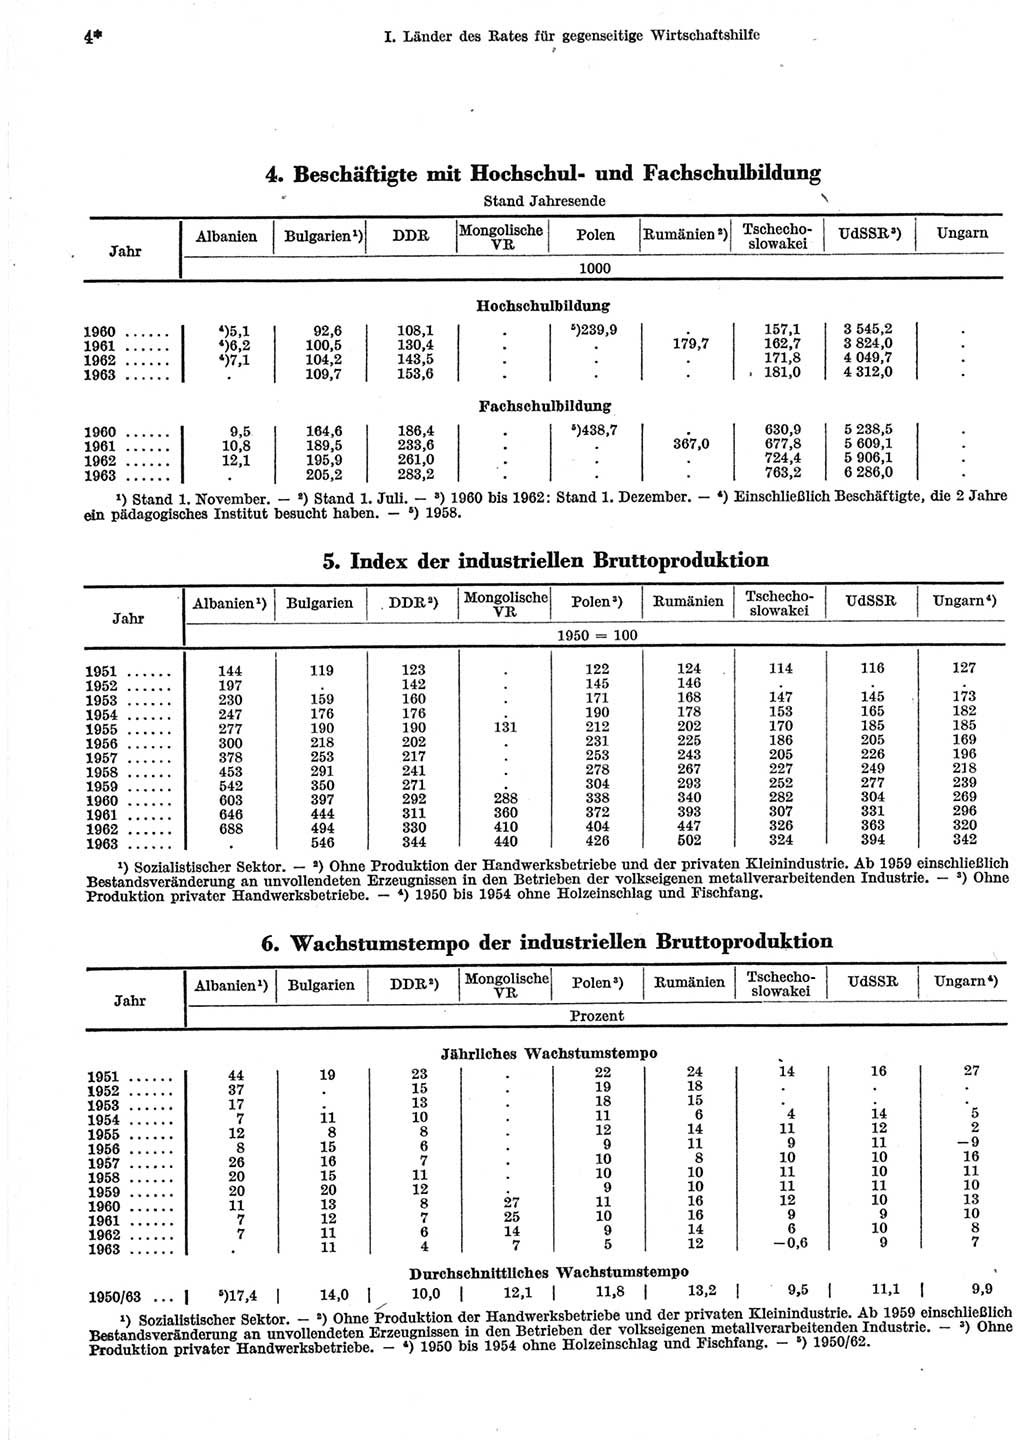 Statistisches Jahrbuch der Deutschen Demokratischen Republik (DDR) 1965, Seite 4 (Stat. Jb. DDR 1965, S. 4)